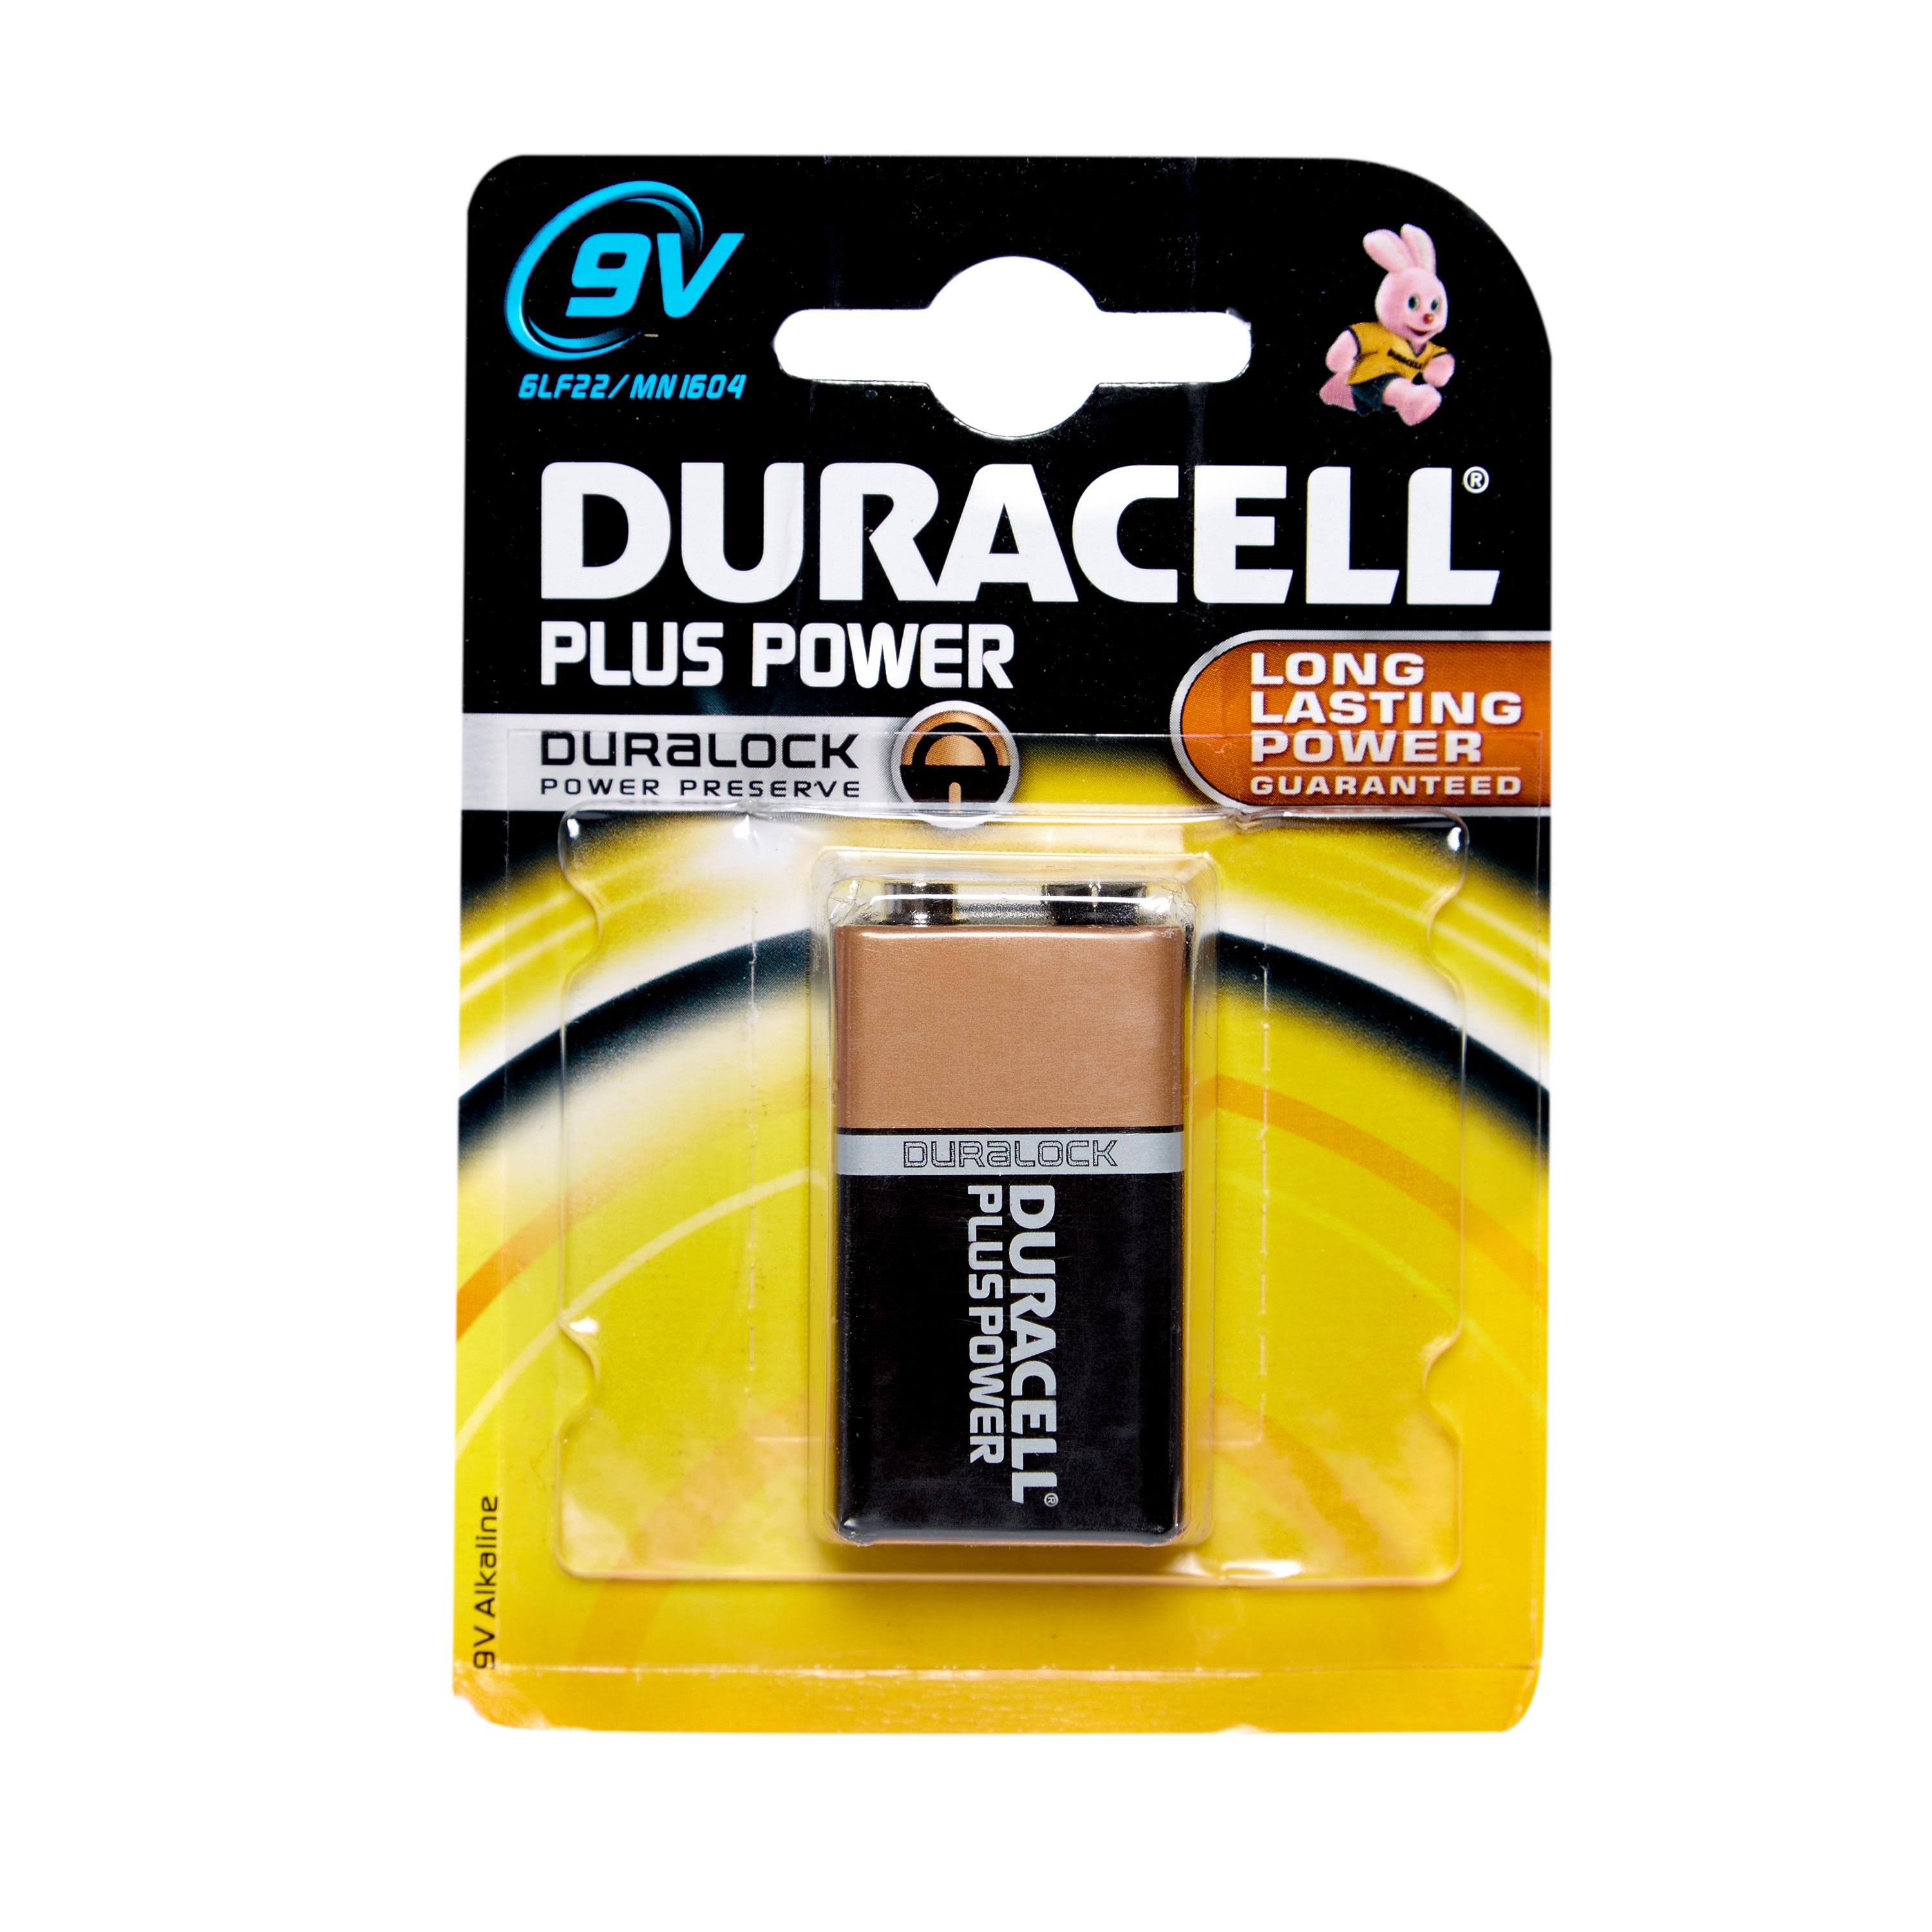 Duracell Plus Power Type Alkaline Battery - 9V